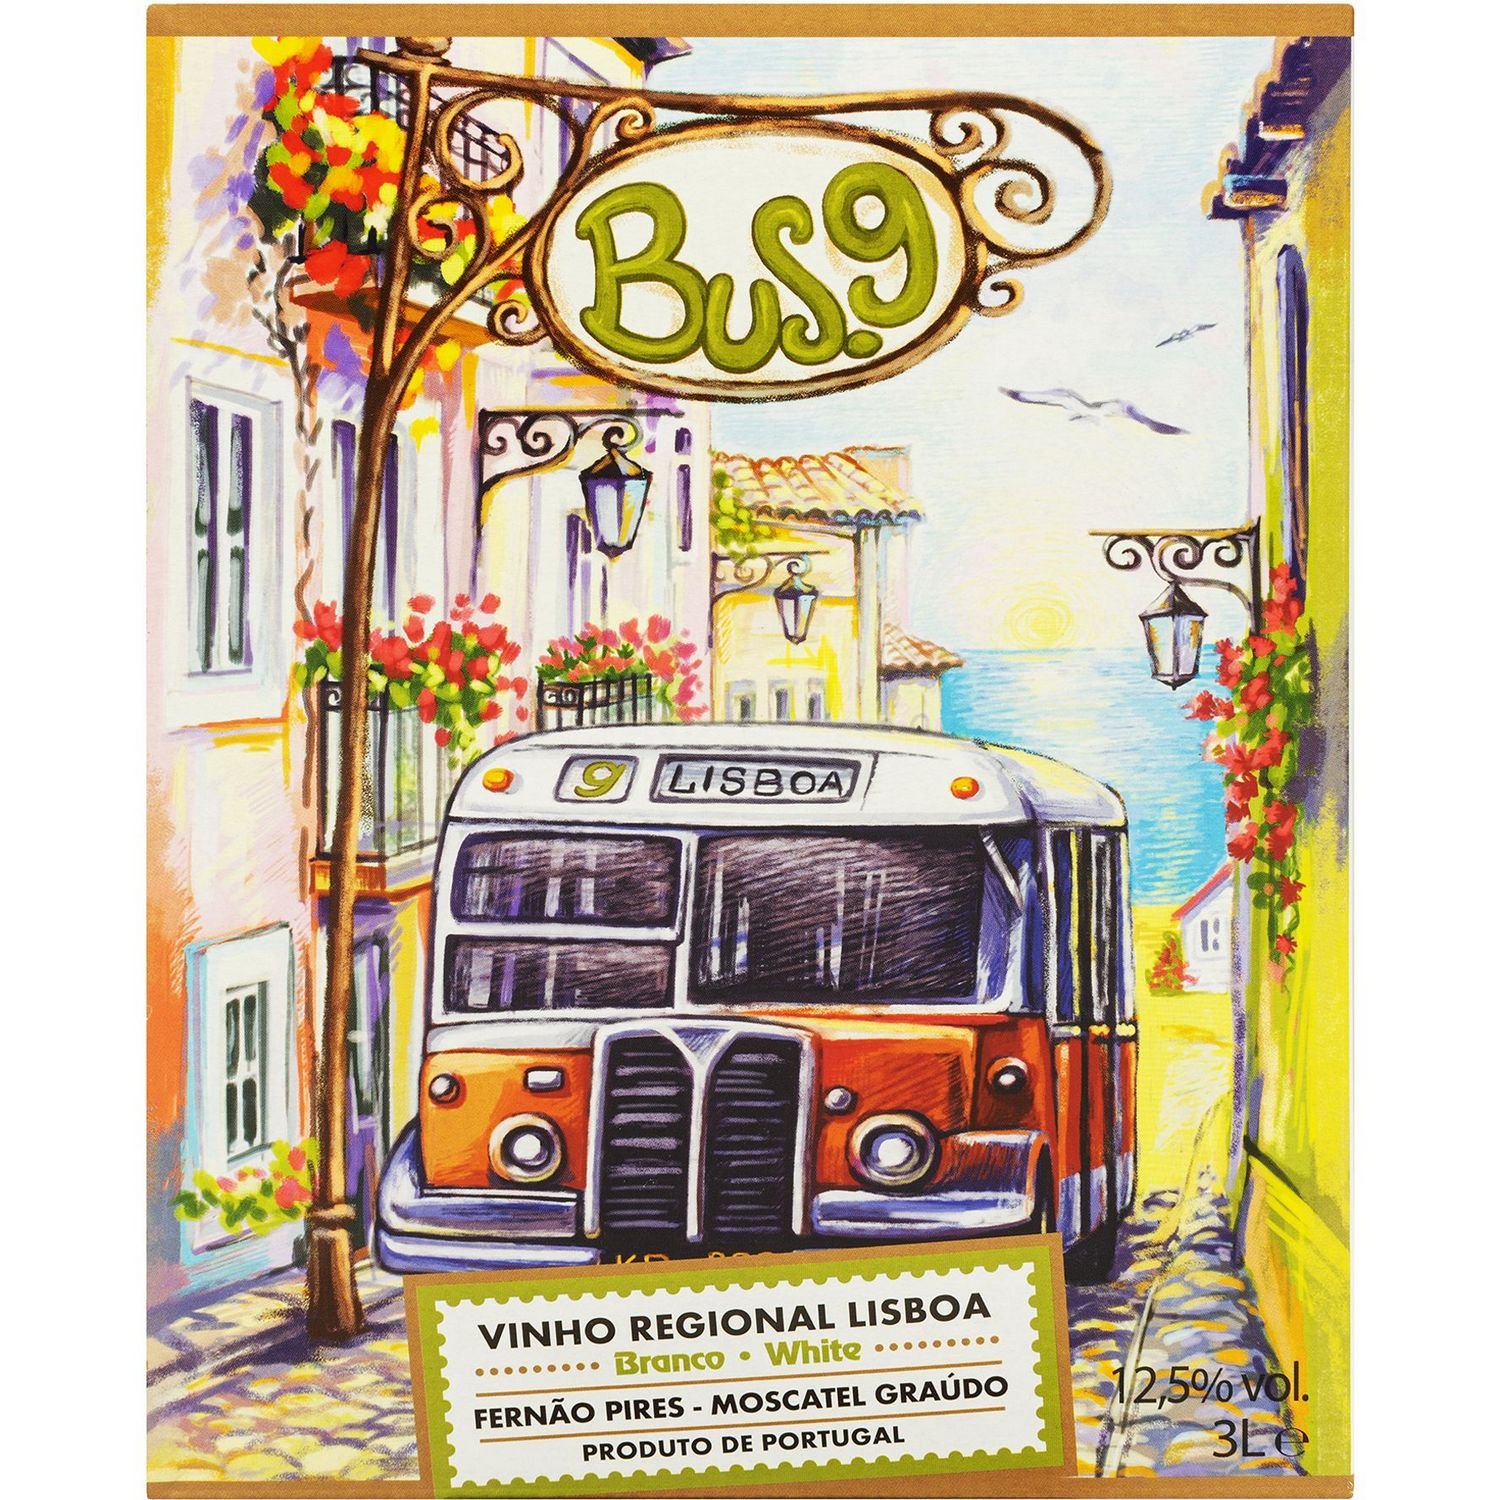 Вино Bus.9 Vinho Regional Lisboa Fernao Pires-Moscatel Graudo, белое, сухое, 3 л - фото 1